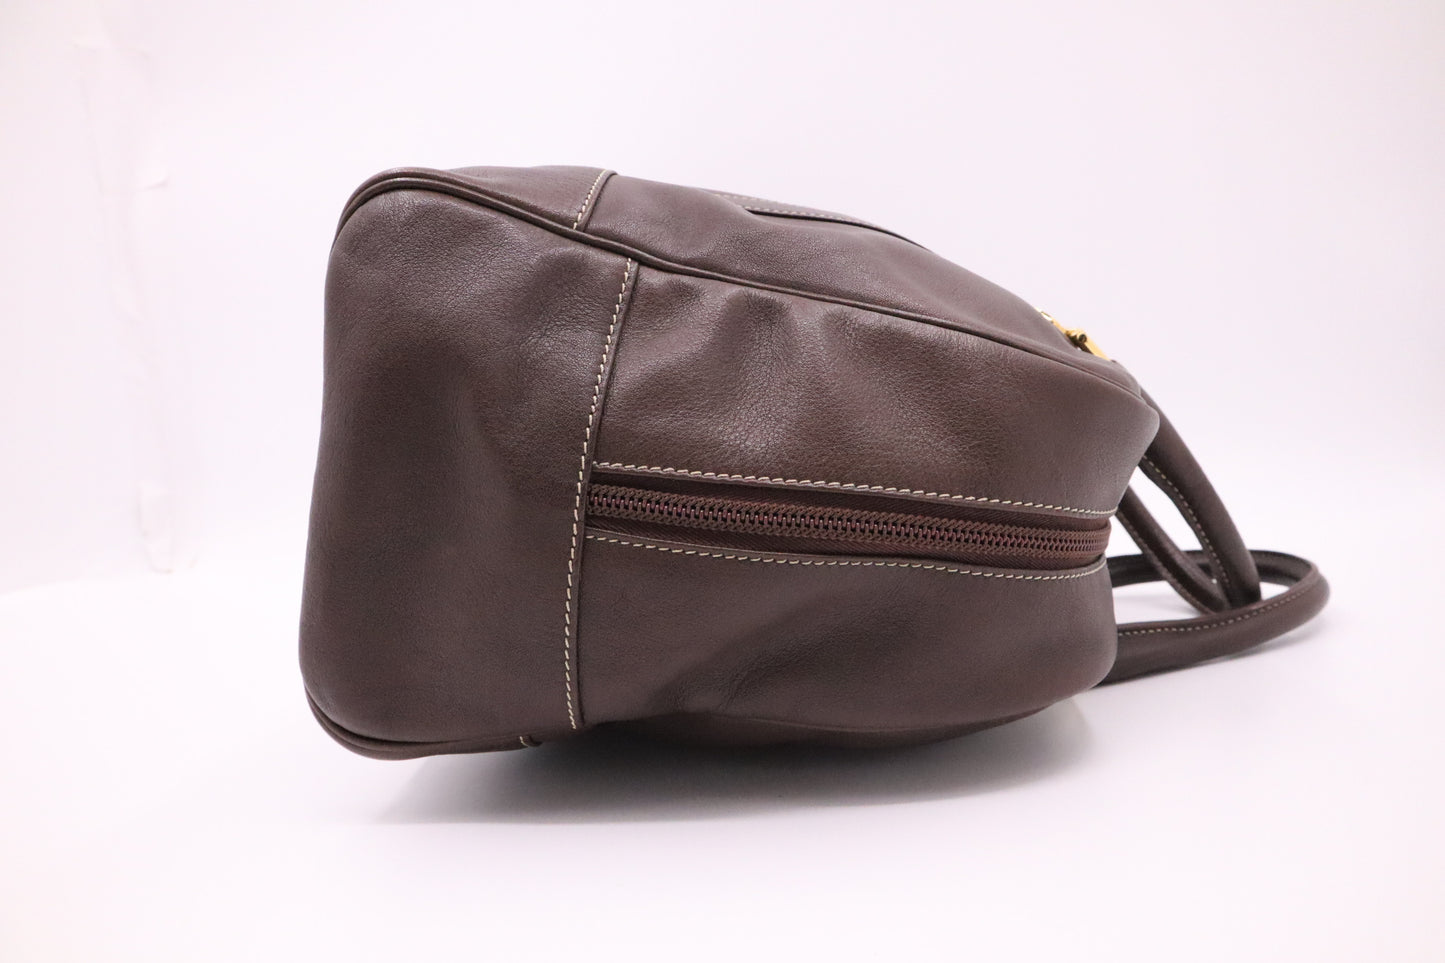 Loewe Bowling Bag in Brown Leather